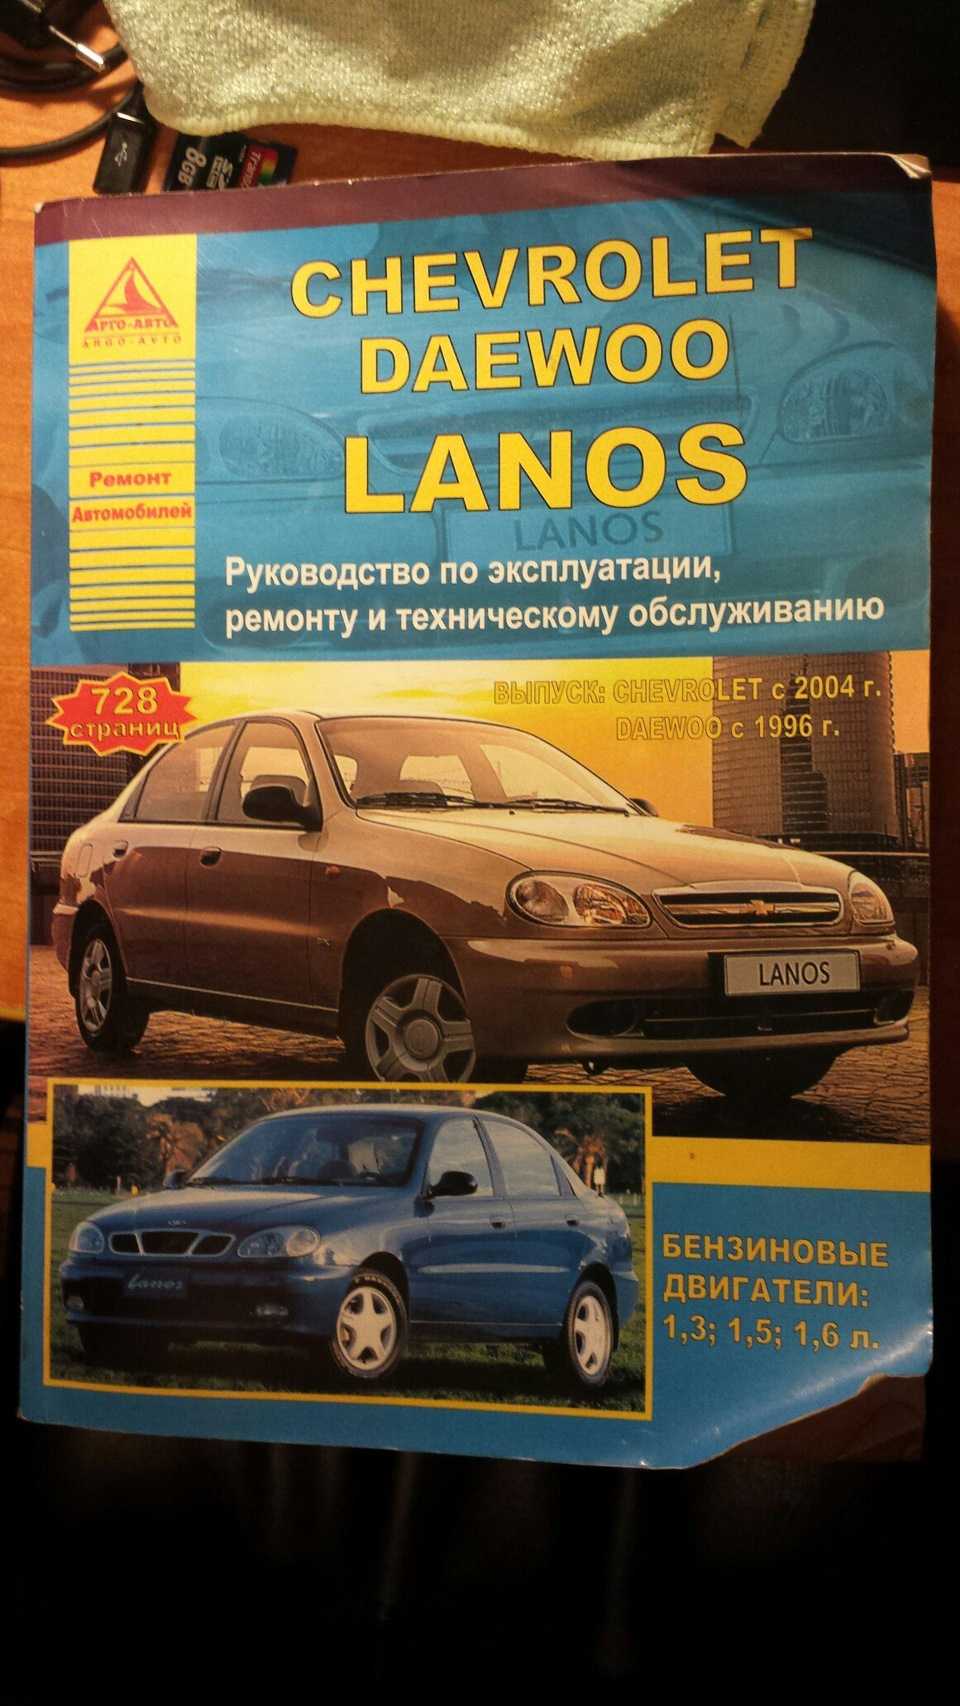 Daewoo lanos 2004, 1.3 литра, привет всем дромовцам, темно-синий №204, механика, расход 5, 5-9, бензин, комплектация модель т13110-01